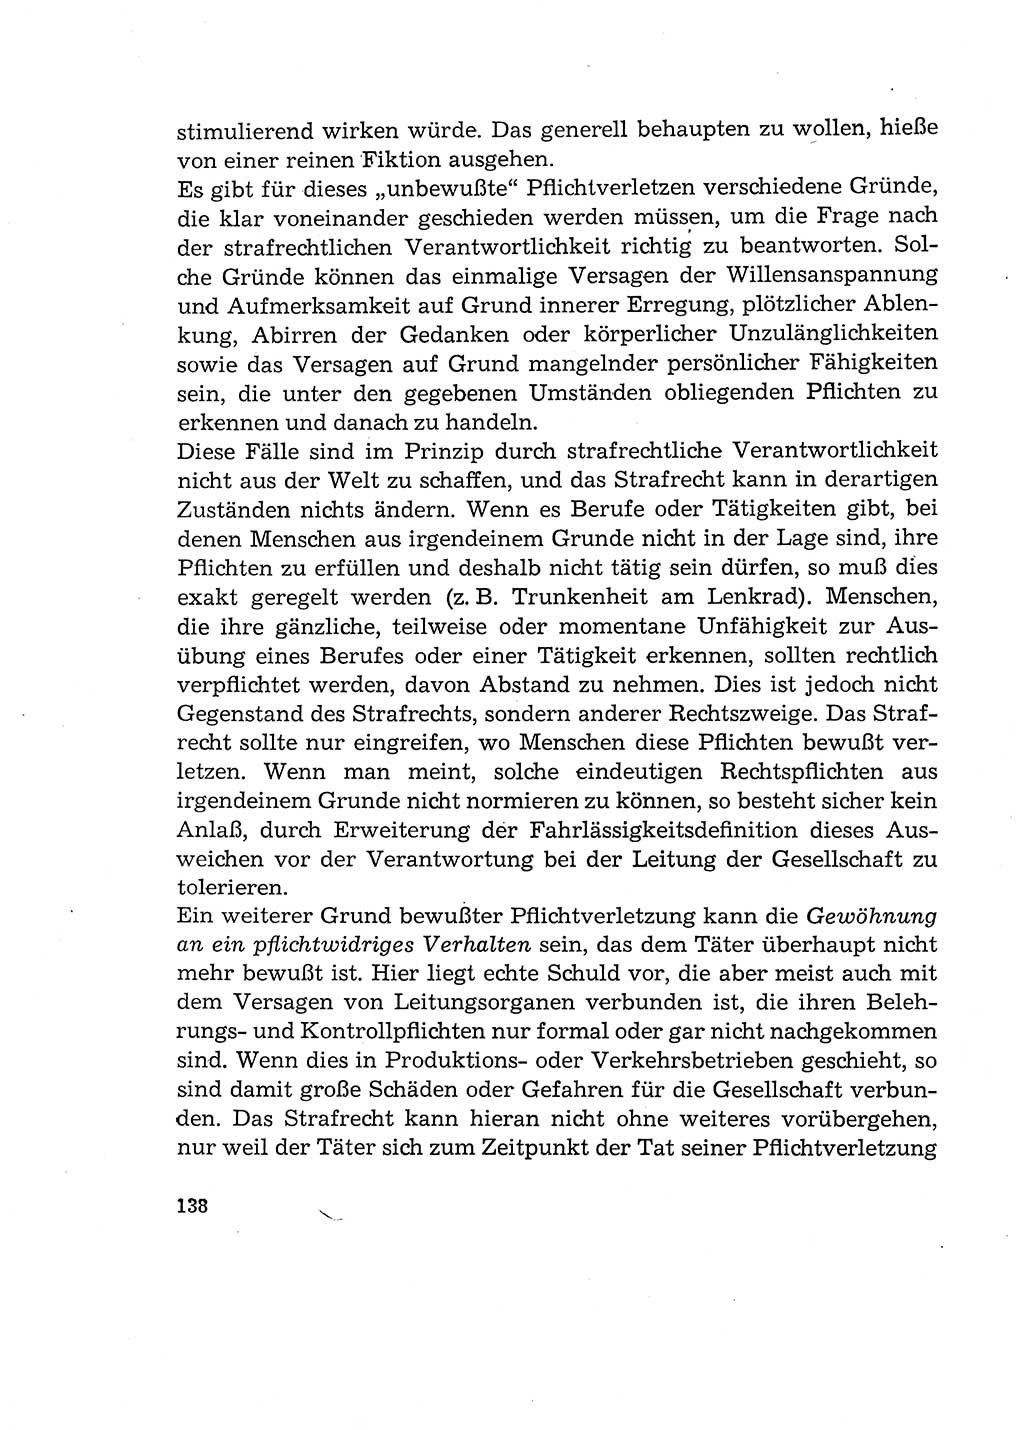 Verantwortung und Schuld im neuen Strafgesetzbuch (StGB) [Deutsche Demokratische Republik (DDR)] 1964, Seite 138 (Verantw. Sch. StGB DDR 1964, S. 138)